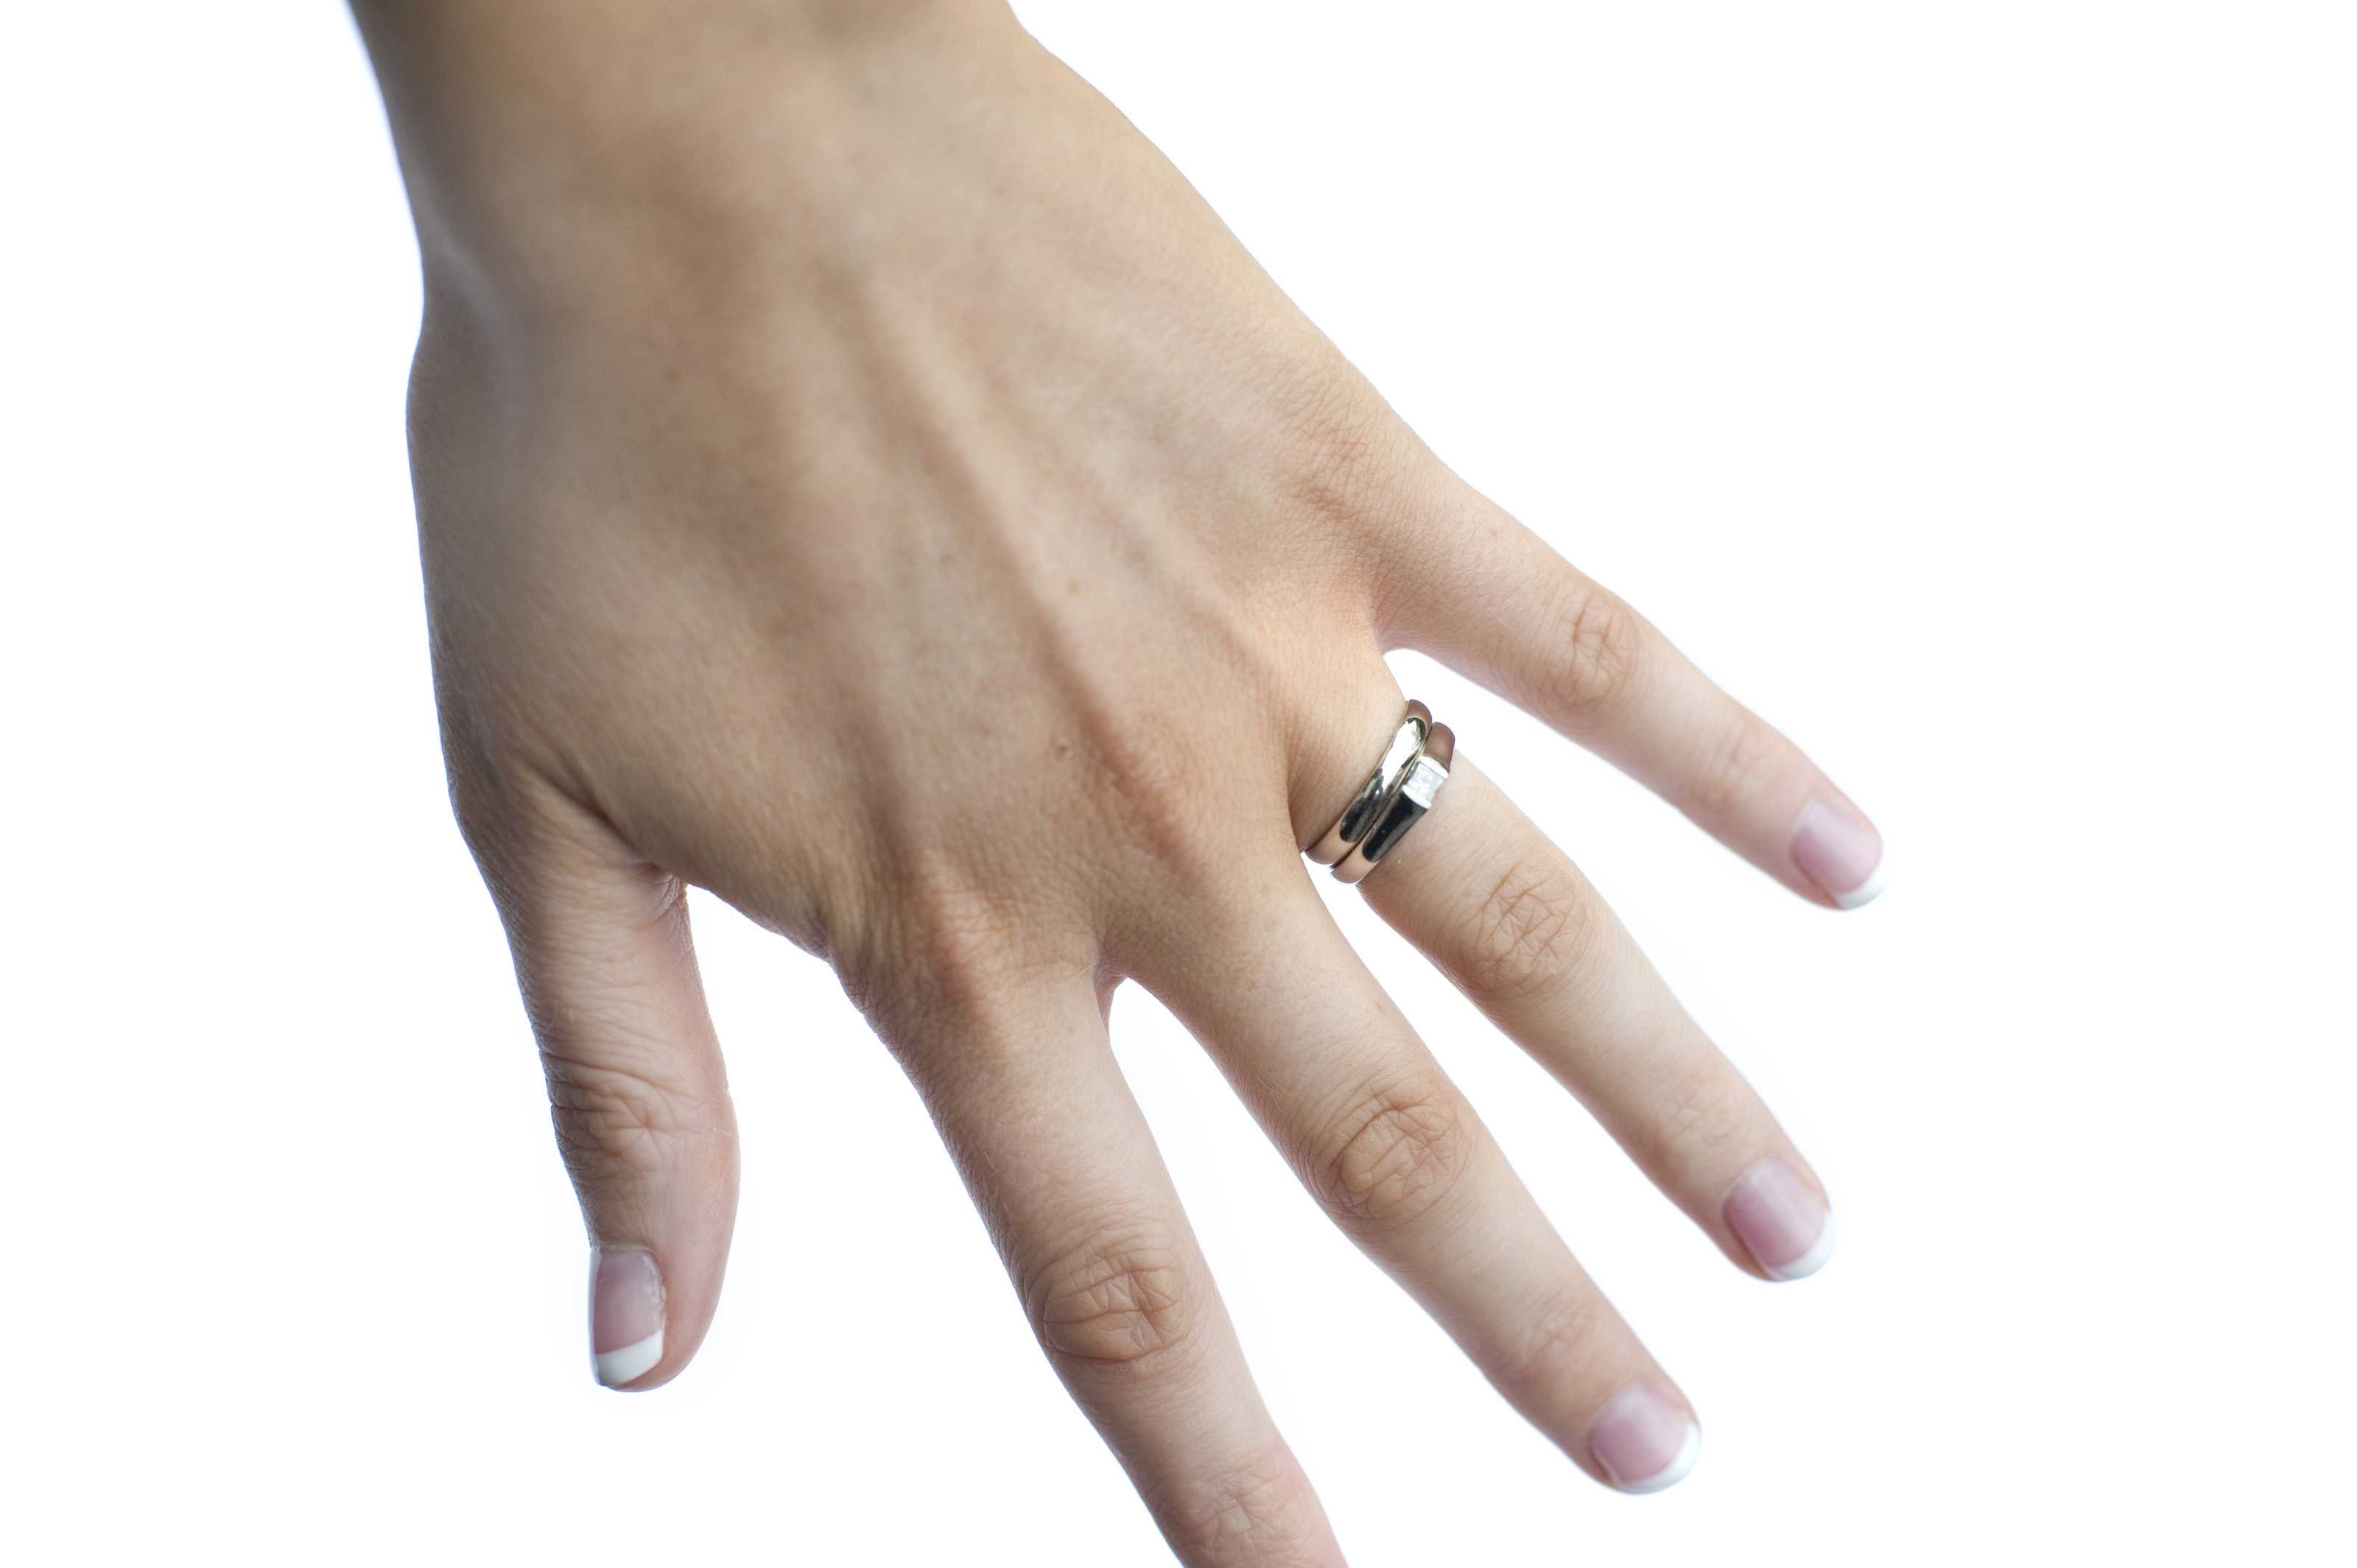 кольцо на большом пальце геи фото 65